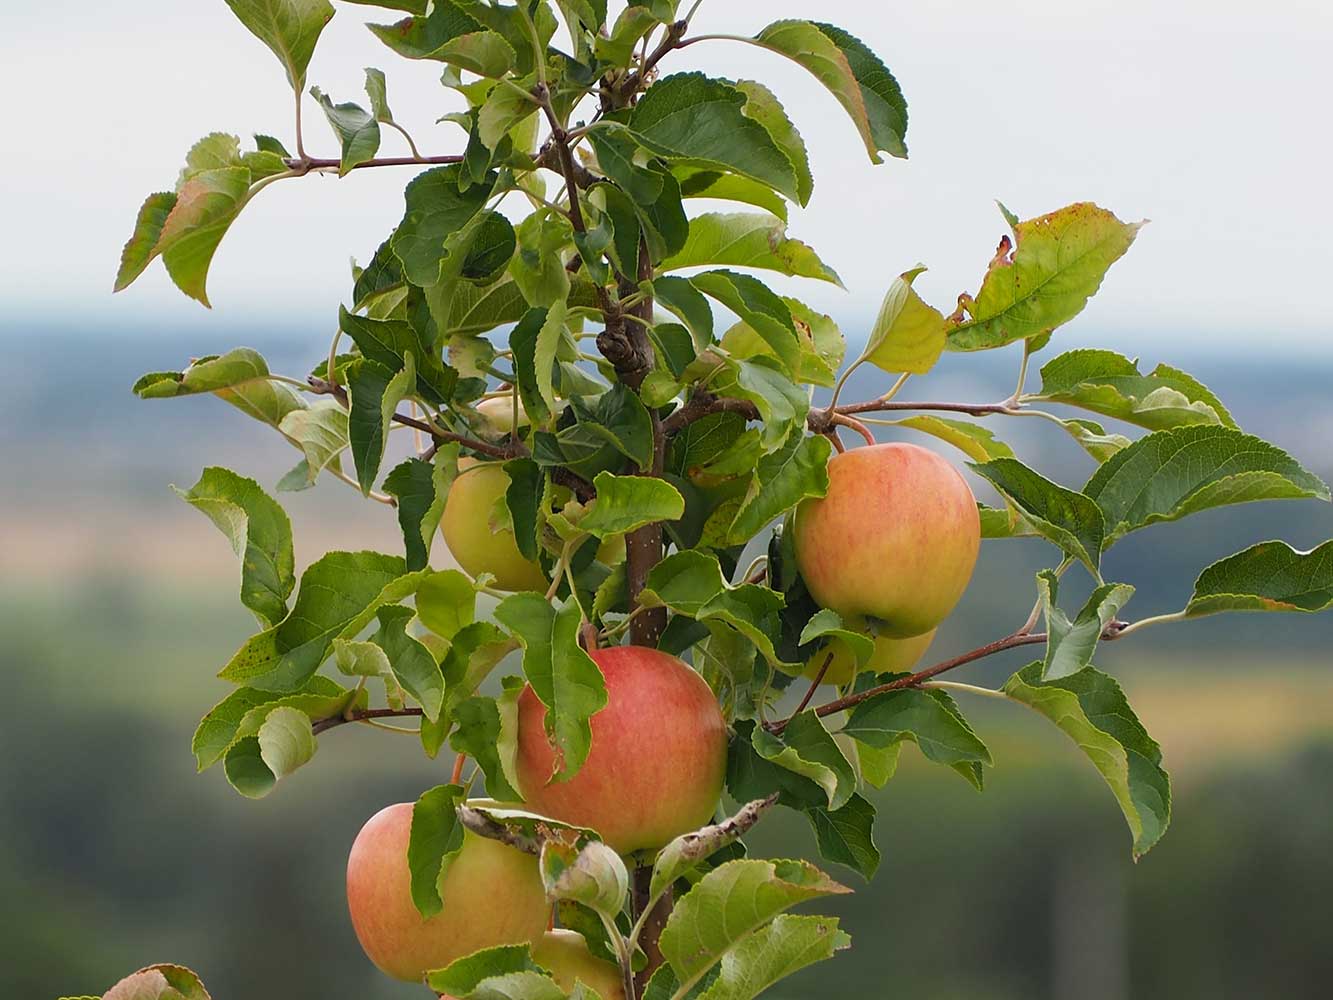 jabuke na grani sa zelenim lišćem